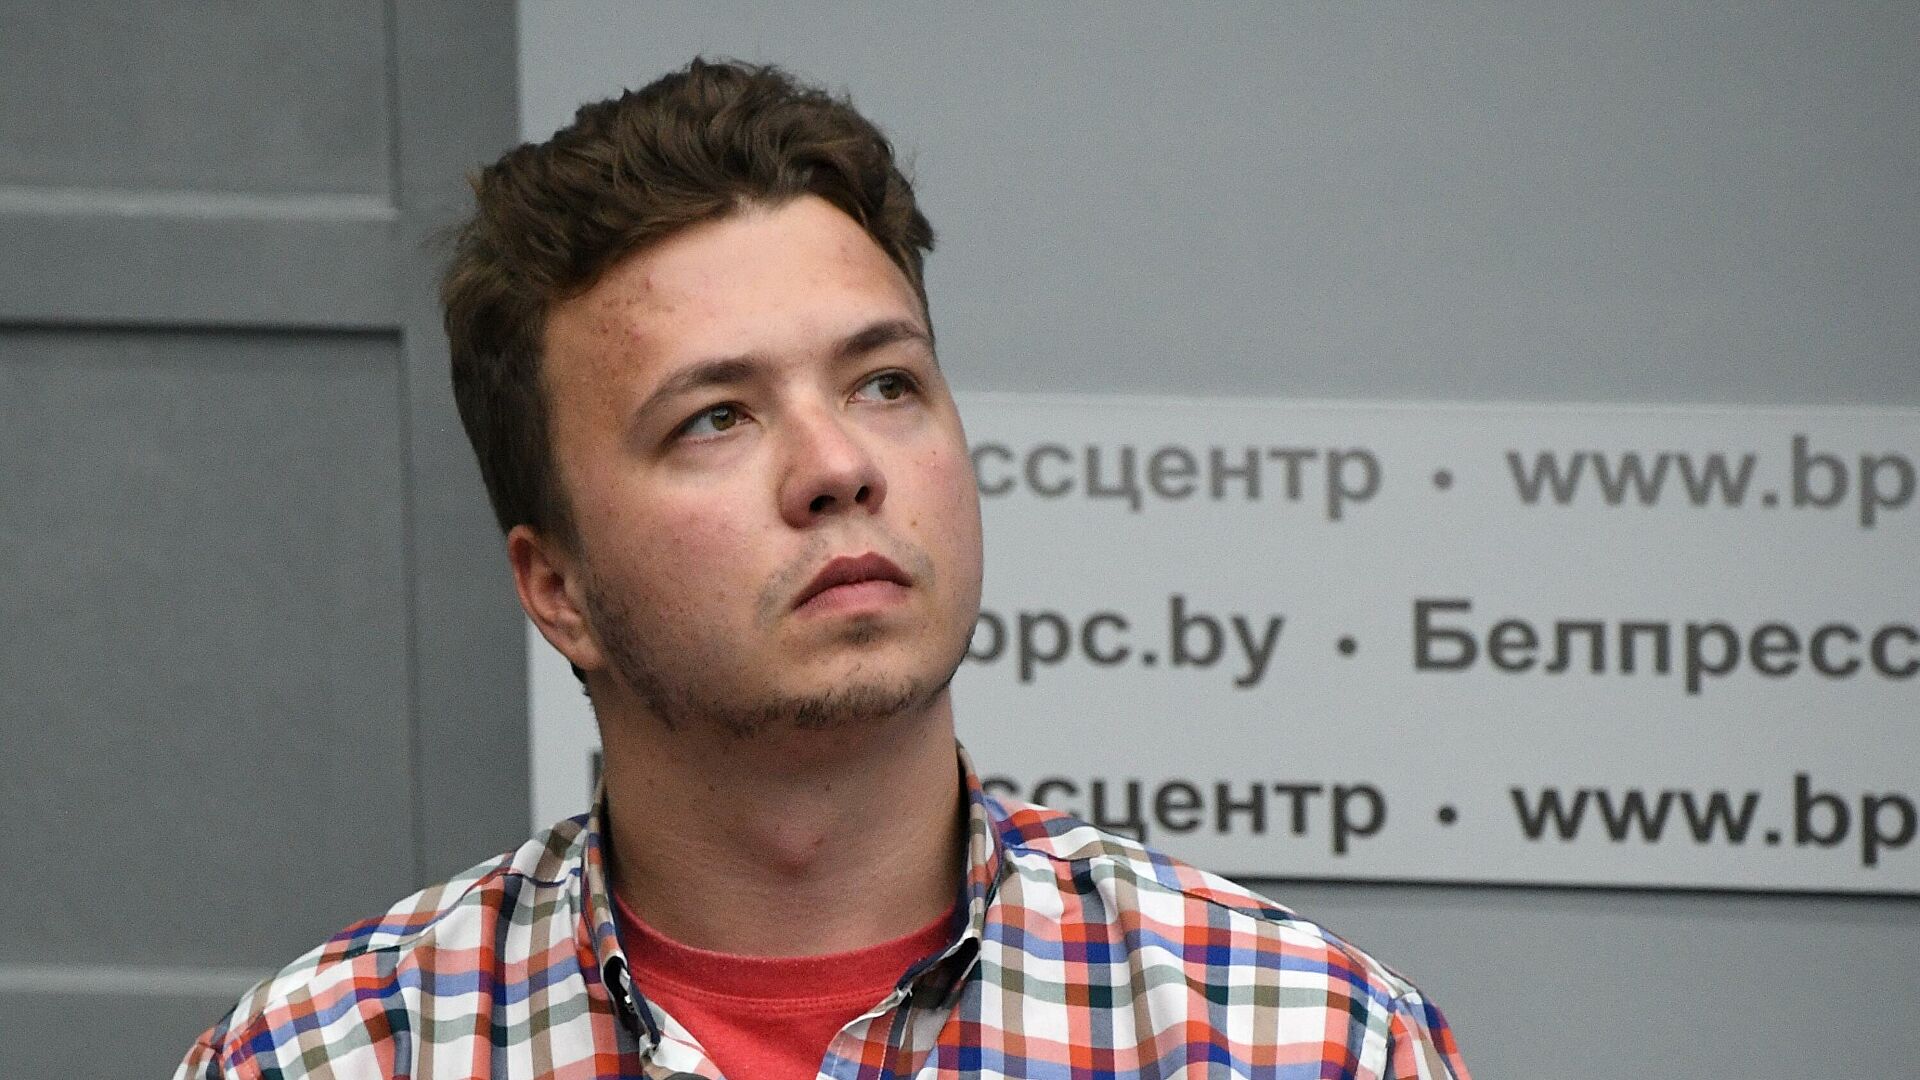 Протасевича отправили под домашний арест, пишут СМИ 